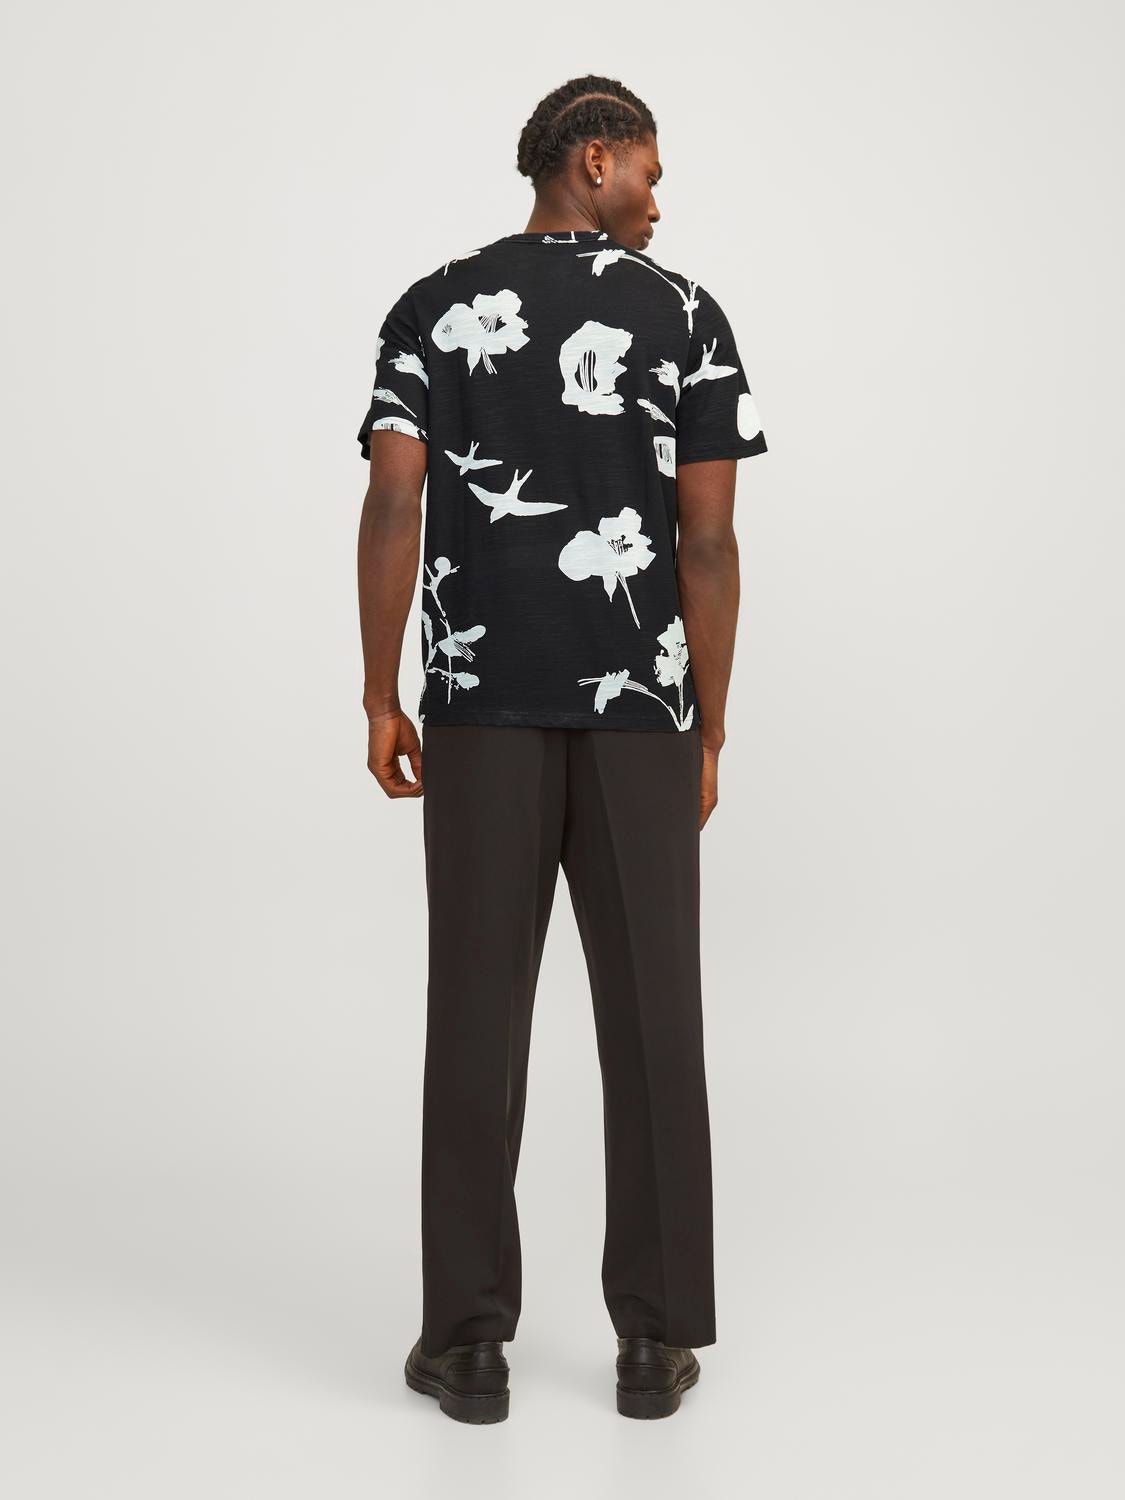 Jack & Jones Camiseta All Over Print Cuello redondo -Black Onyx - 12253552